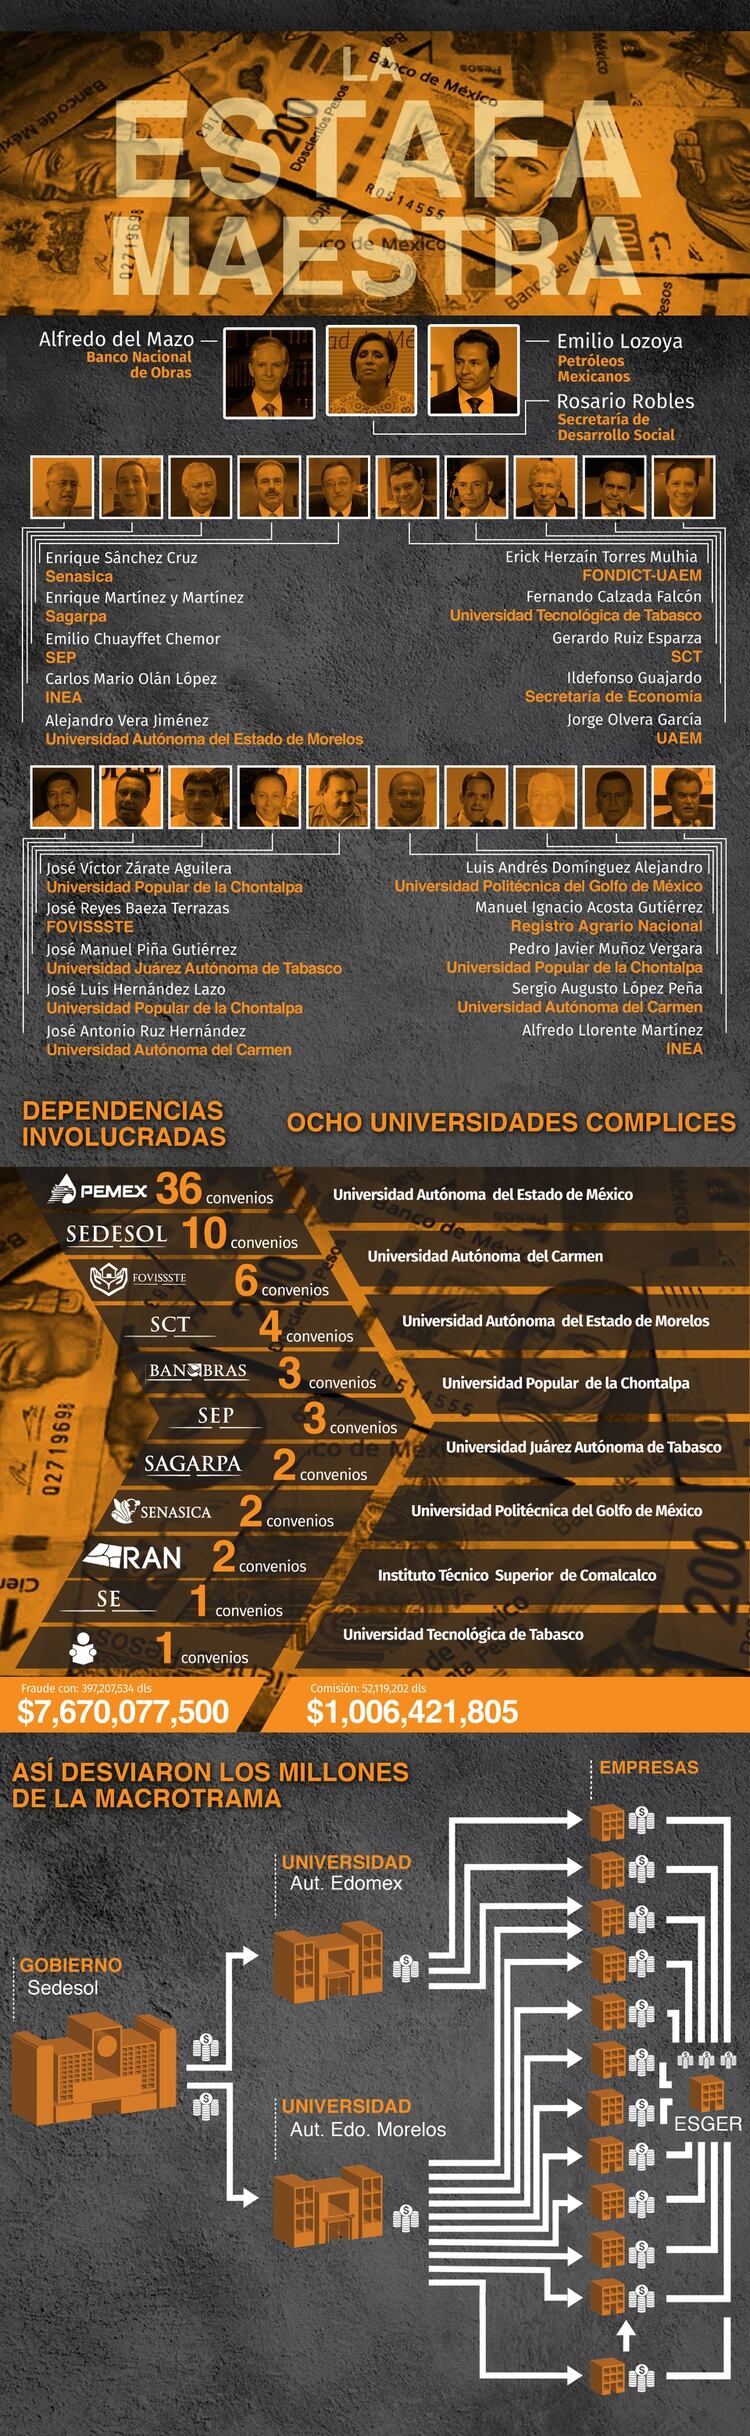 Según la investigación, La Estafa Maestra, así operaron los desvíos millonarios de instituciones públicas. (Infografía: Infobae México/Jovani Silva)